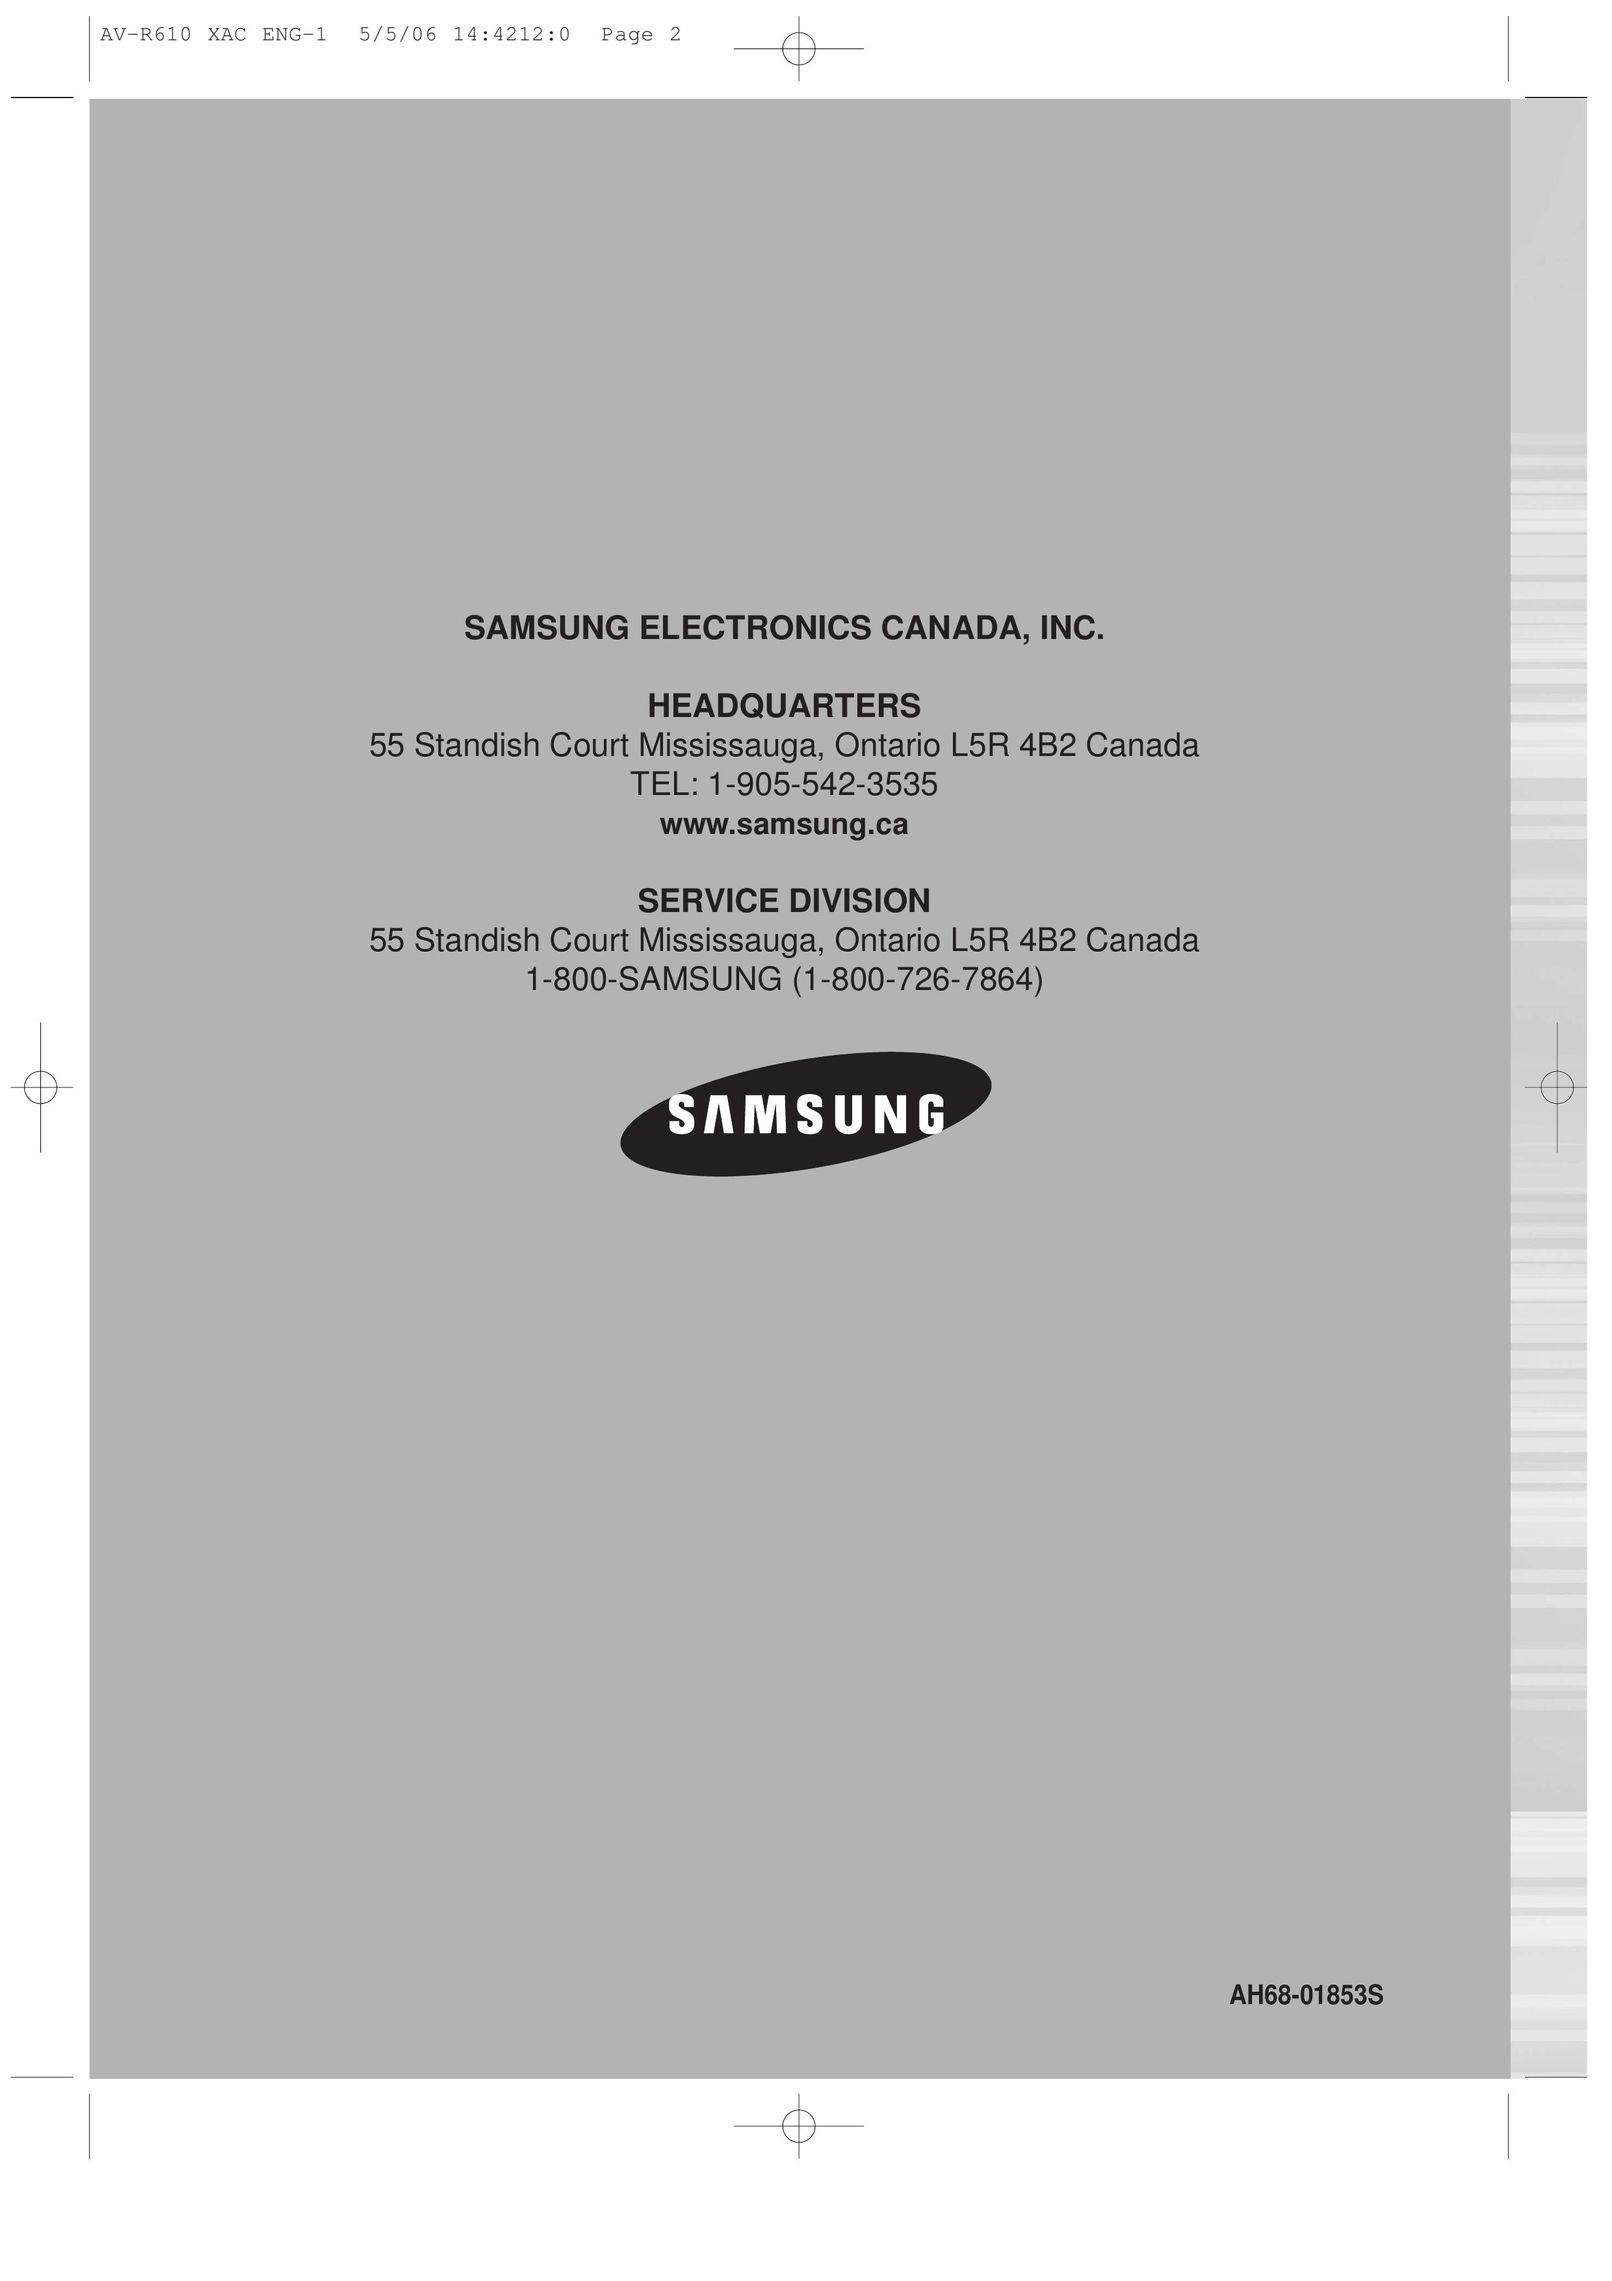 Samsung AV-R610 Stereo Receiver User Manual